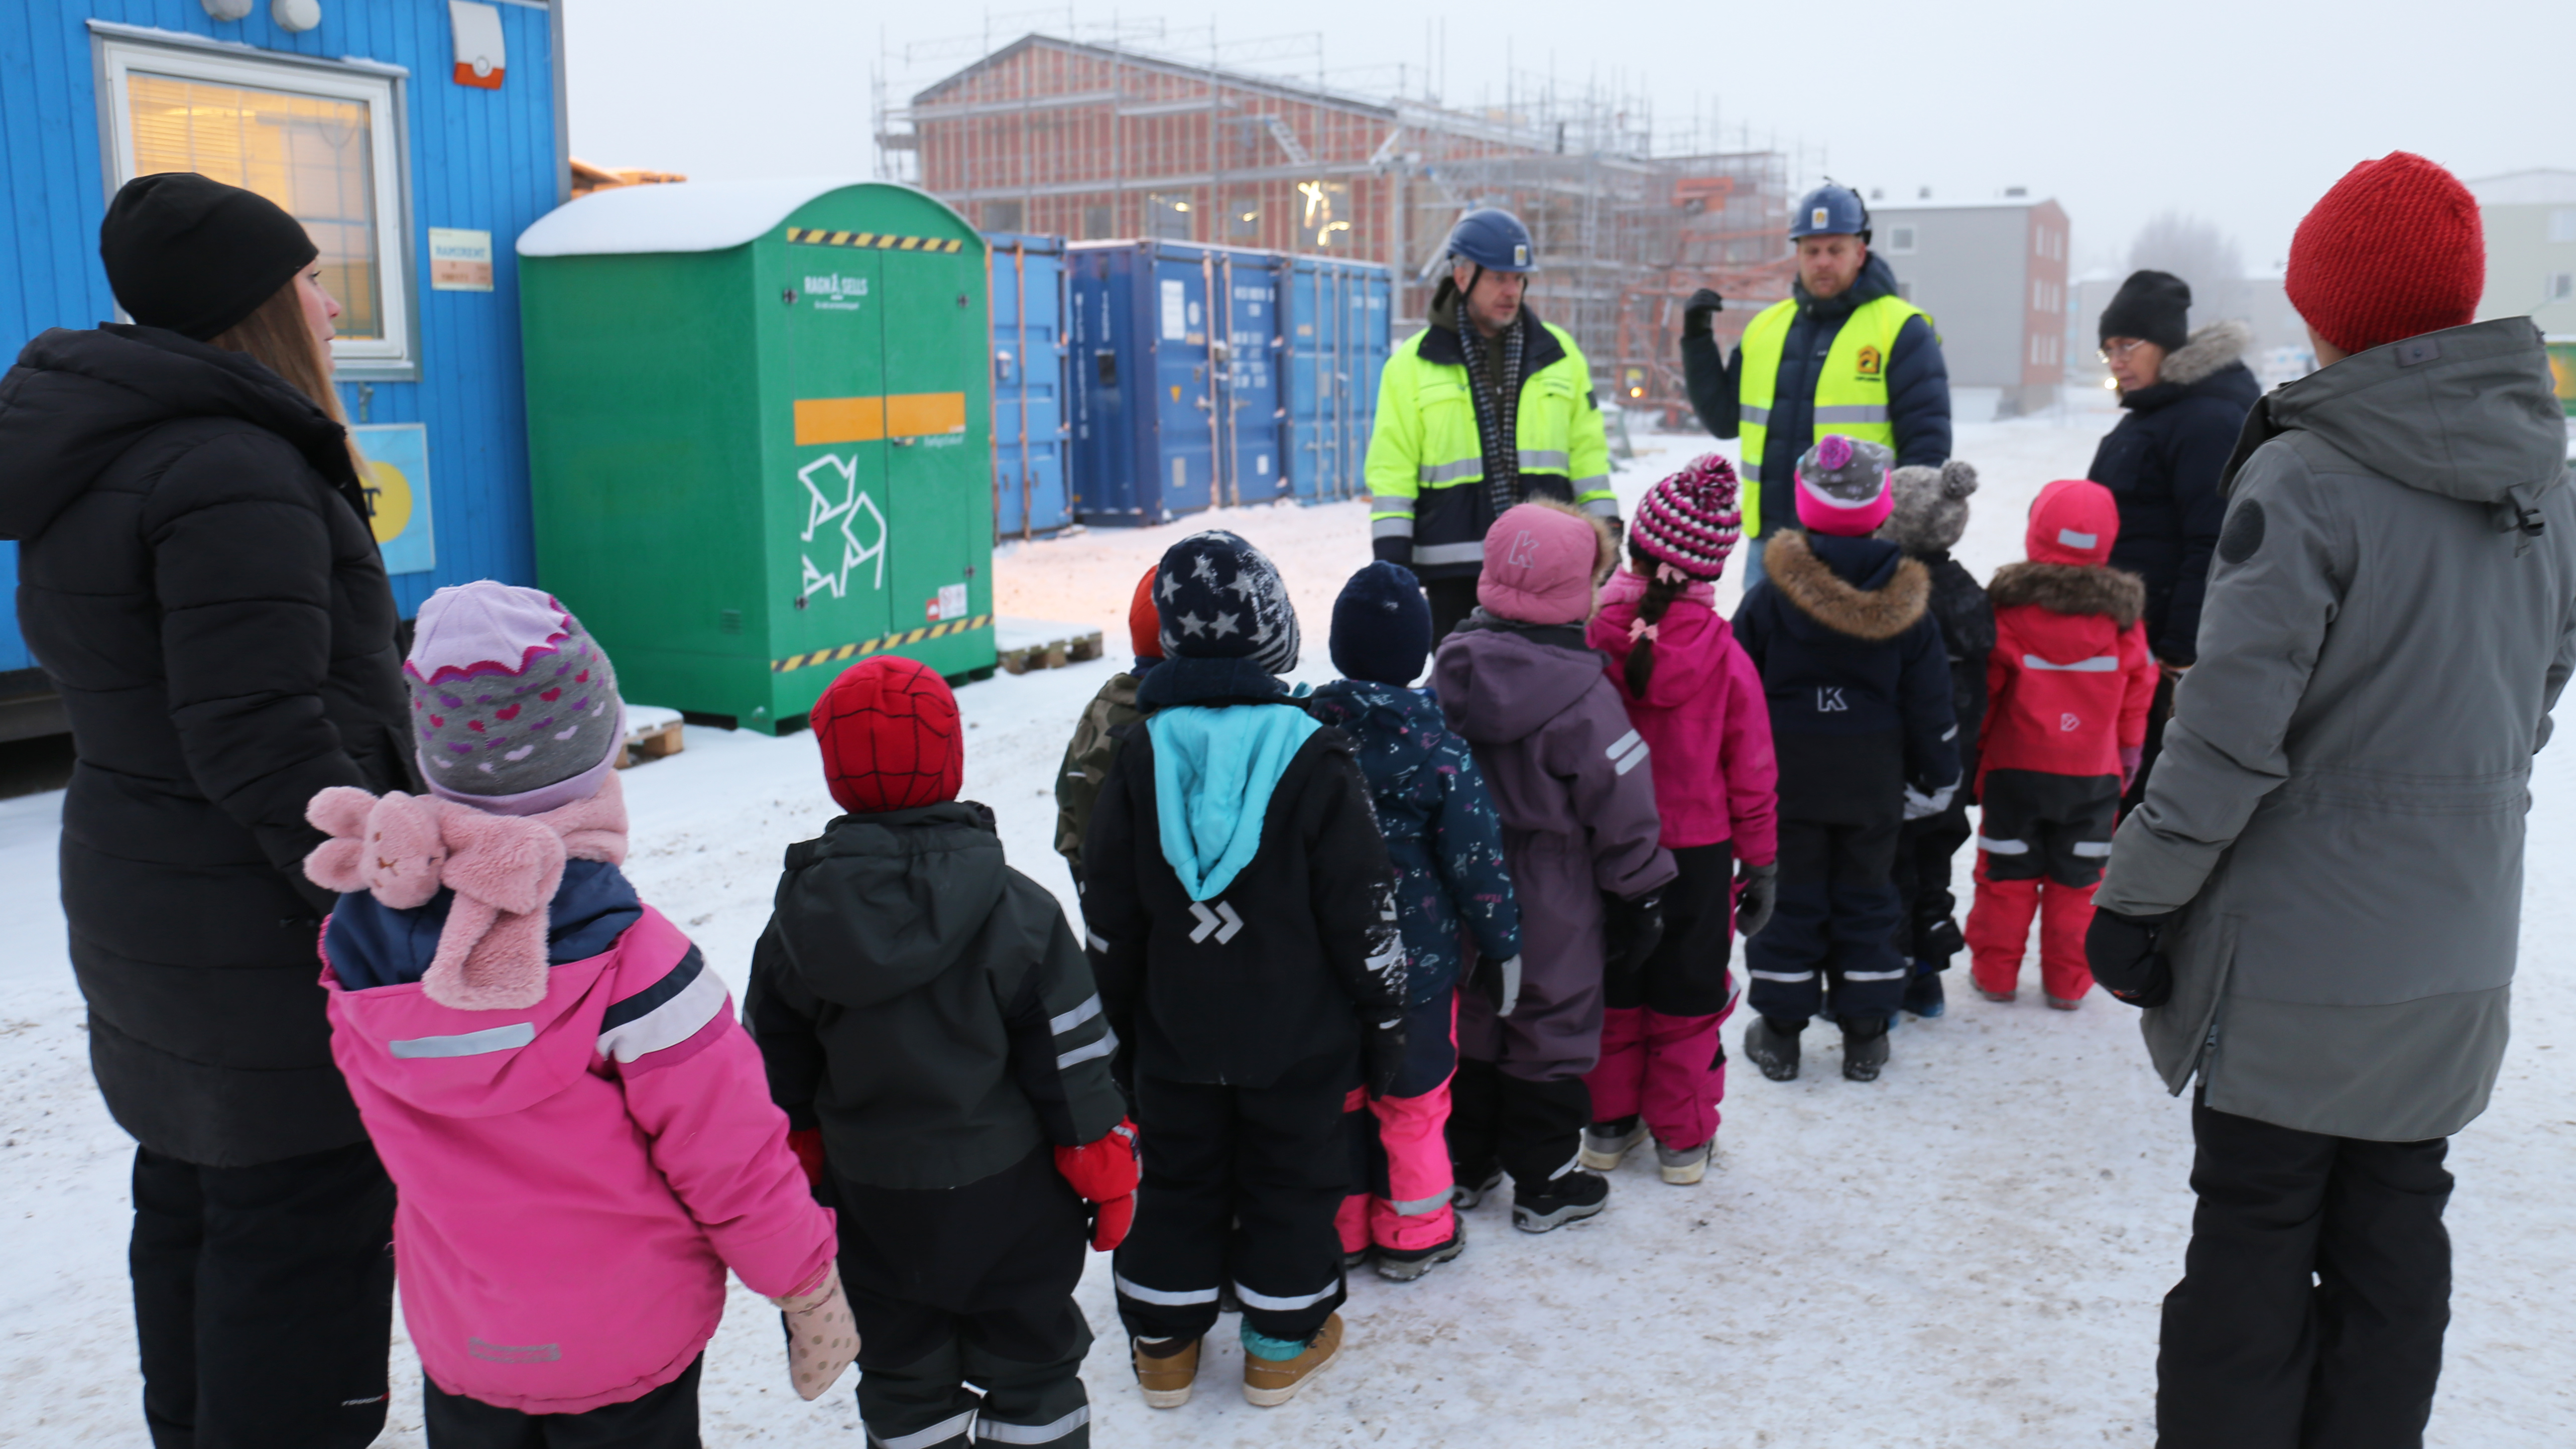 Vintermiljö, barn och personal på väg in i bygget